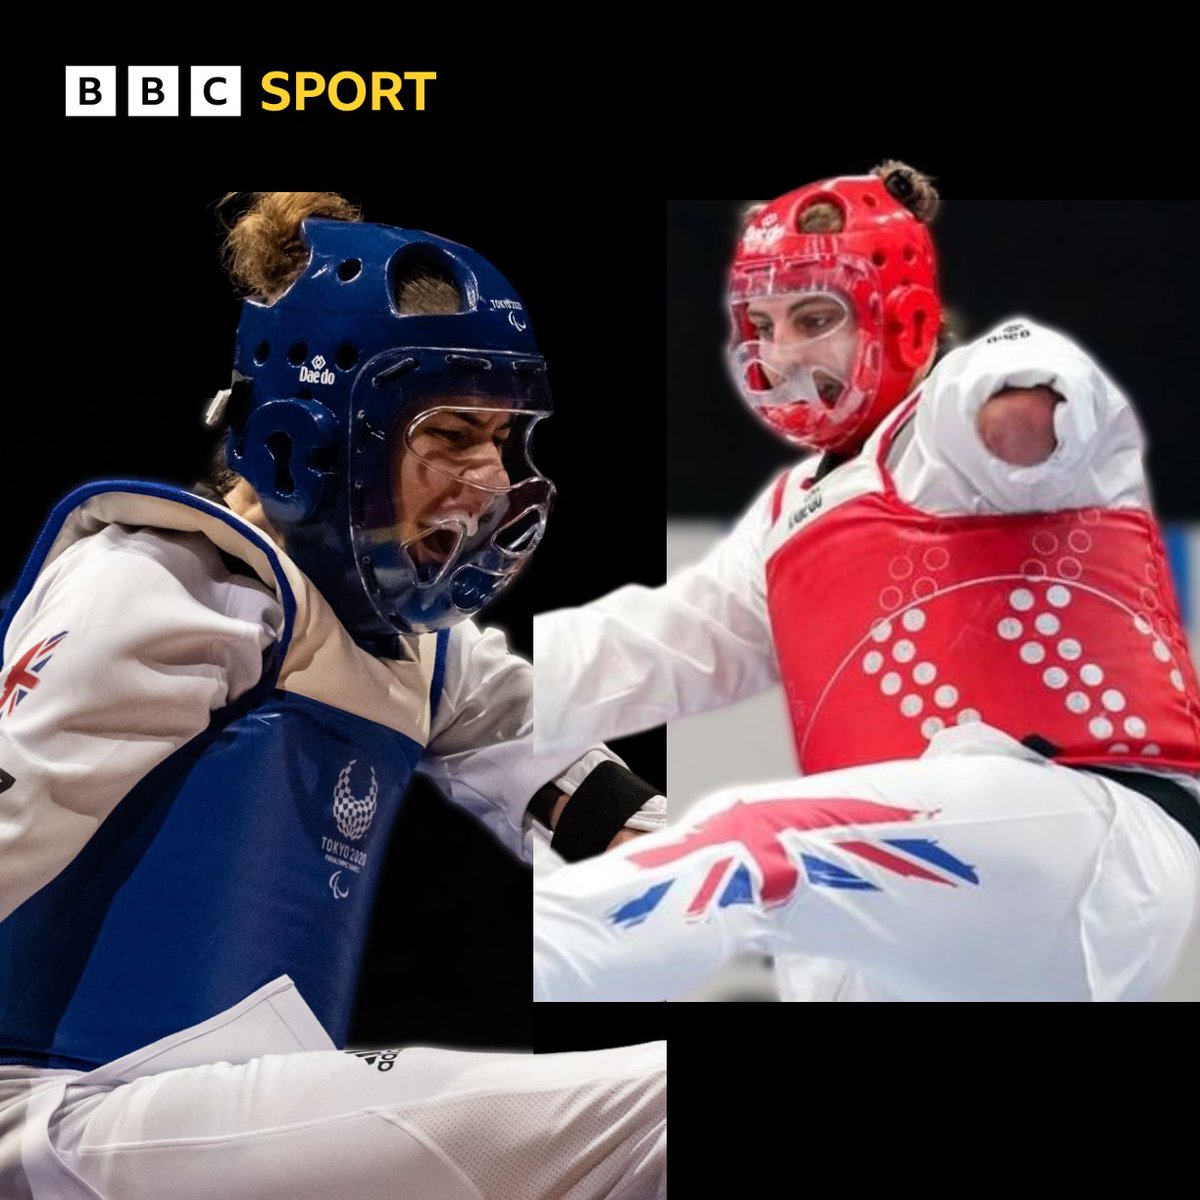 Welsh duo @BethMunro19 and @mattbush1 have both won gold at the World Para Taekwondo GP in Taijuan, China 🥇🥇 #ParaTaekwondo